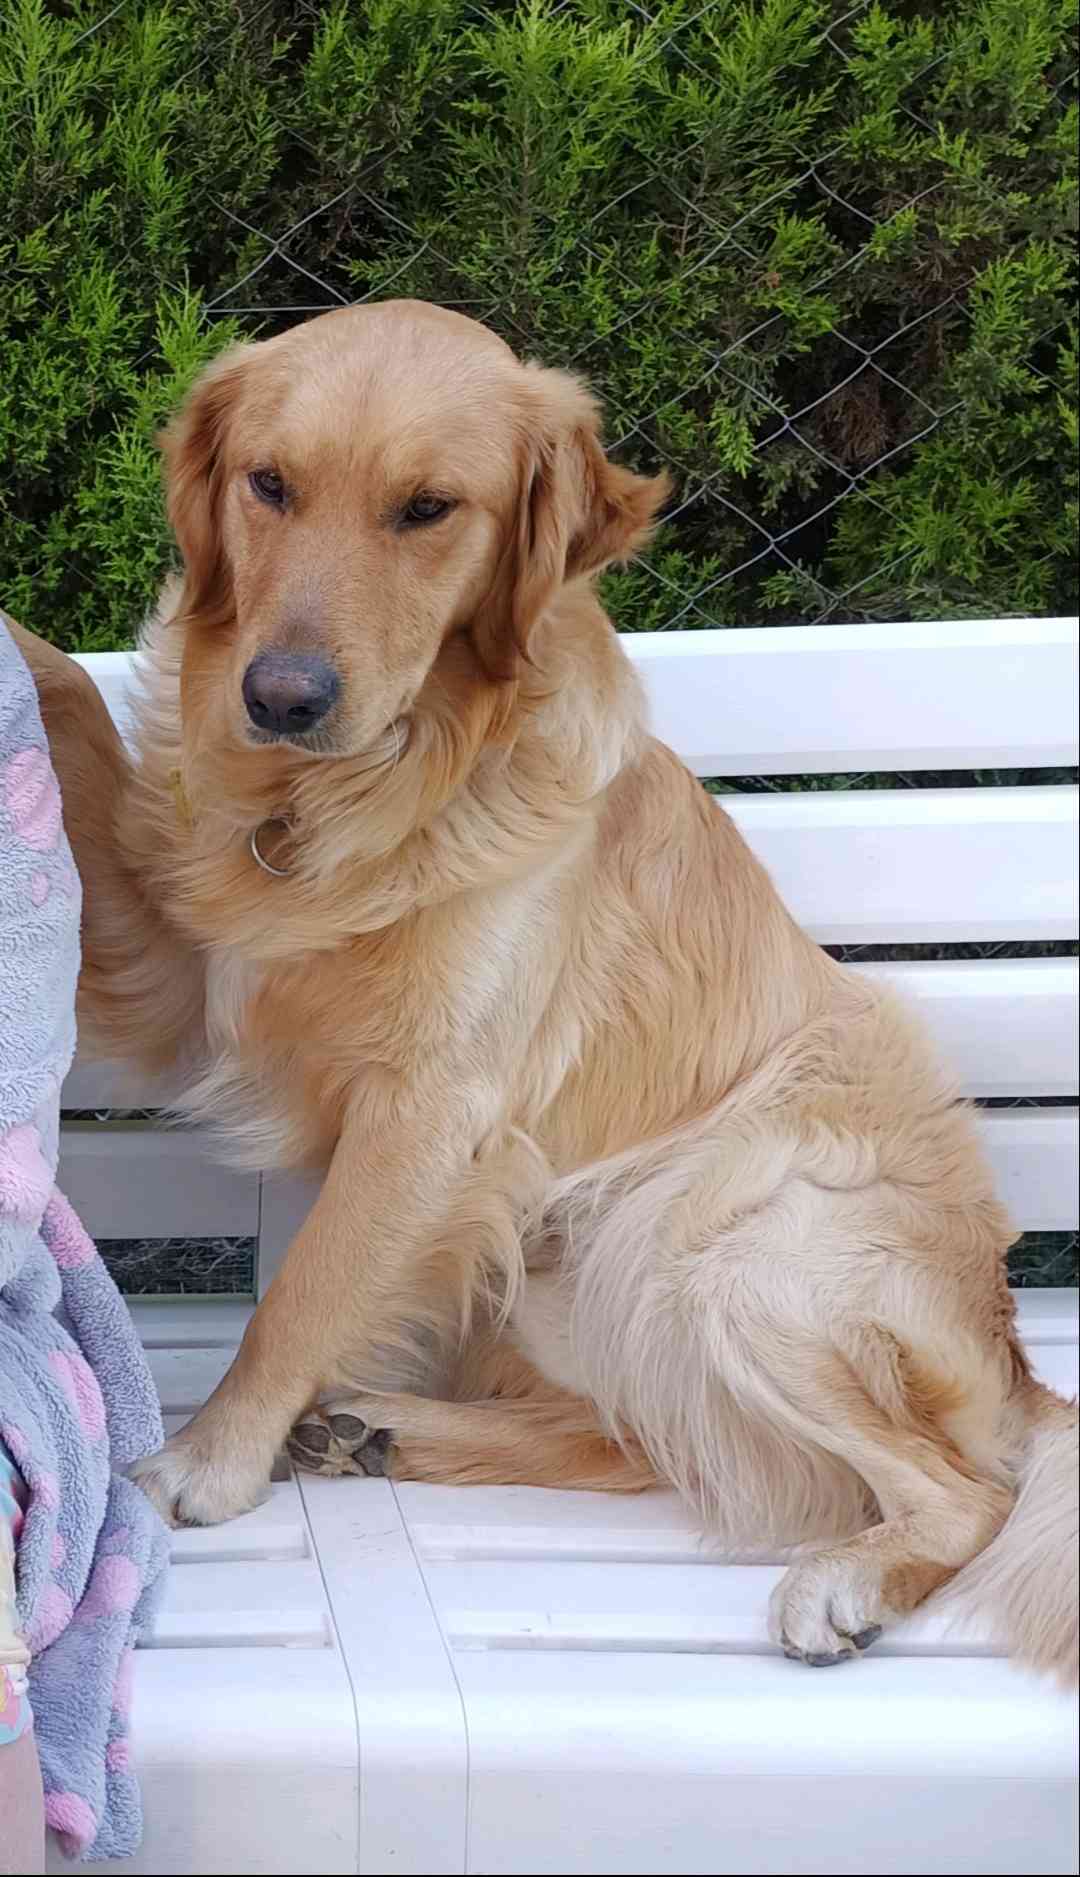 Manisa Akhisar'da golden cinsi köpeğim kayboldu